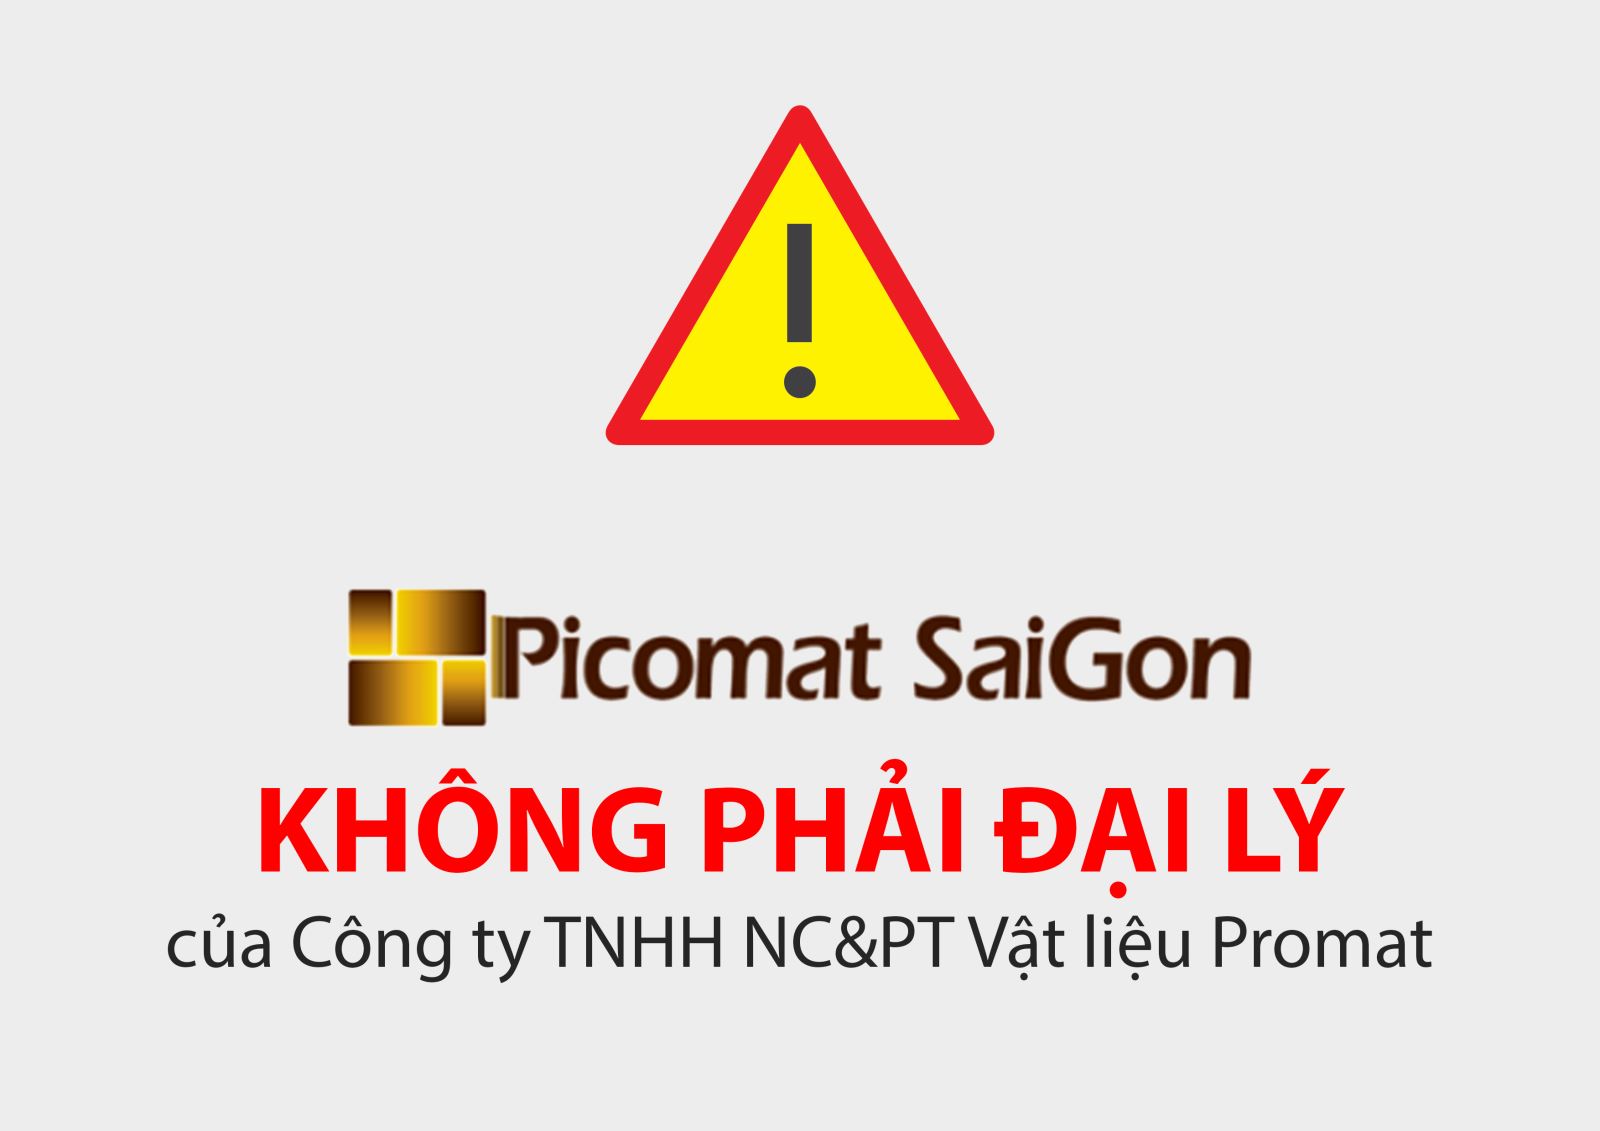 Picomat Sài Gòn không phải là đại lý của Picomat 